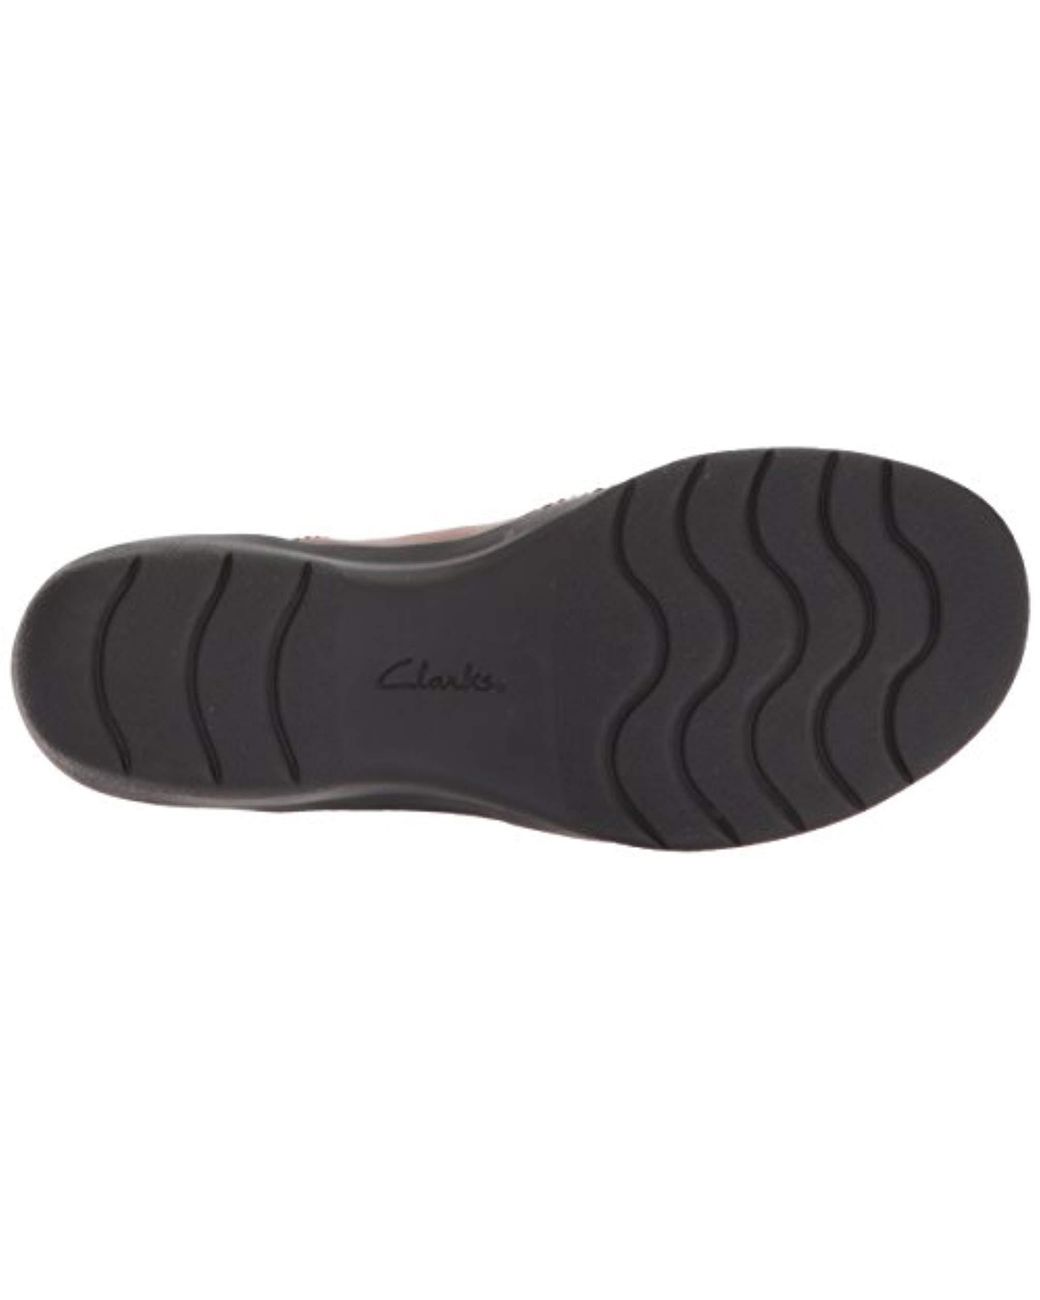 clarks women's cheyn wale loafer